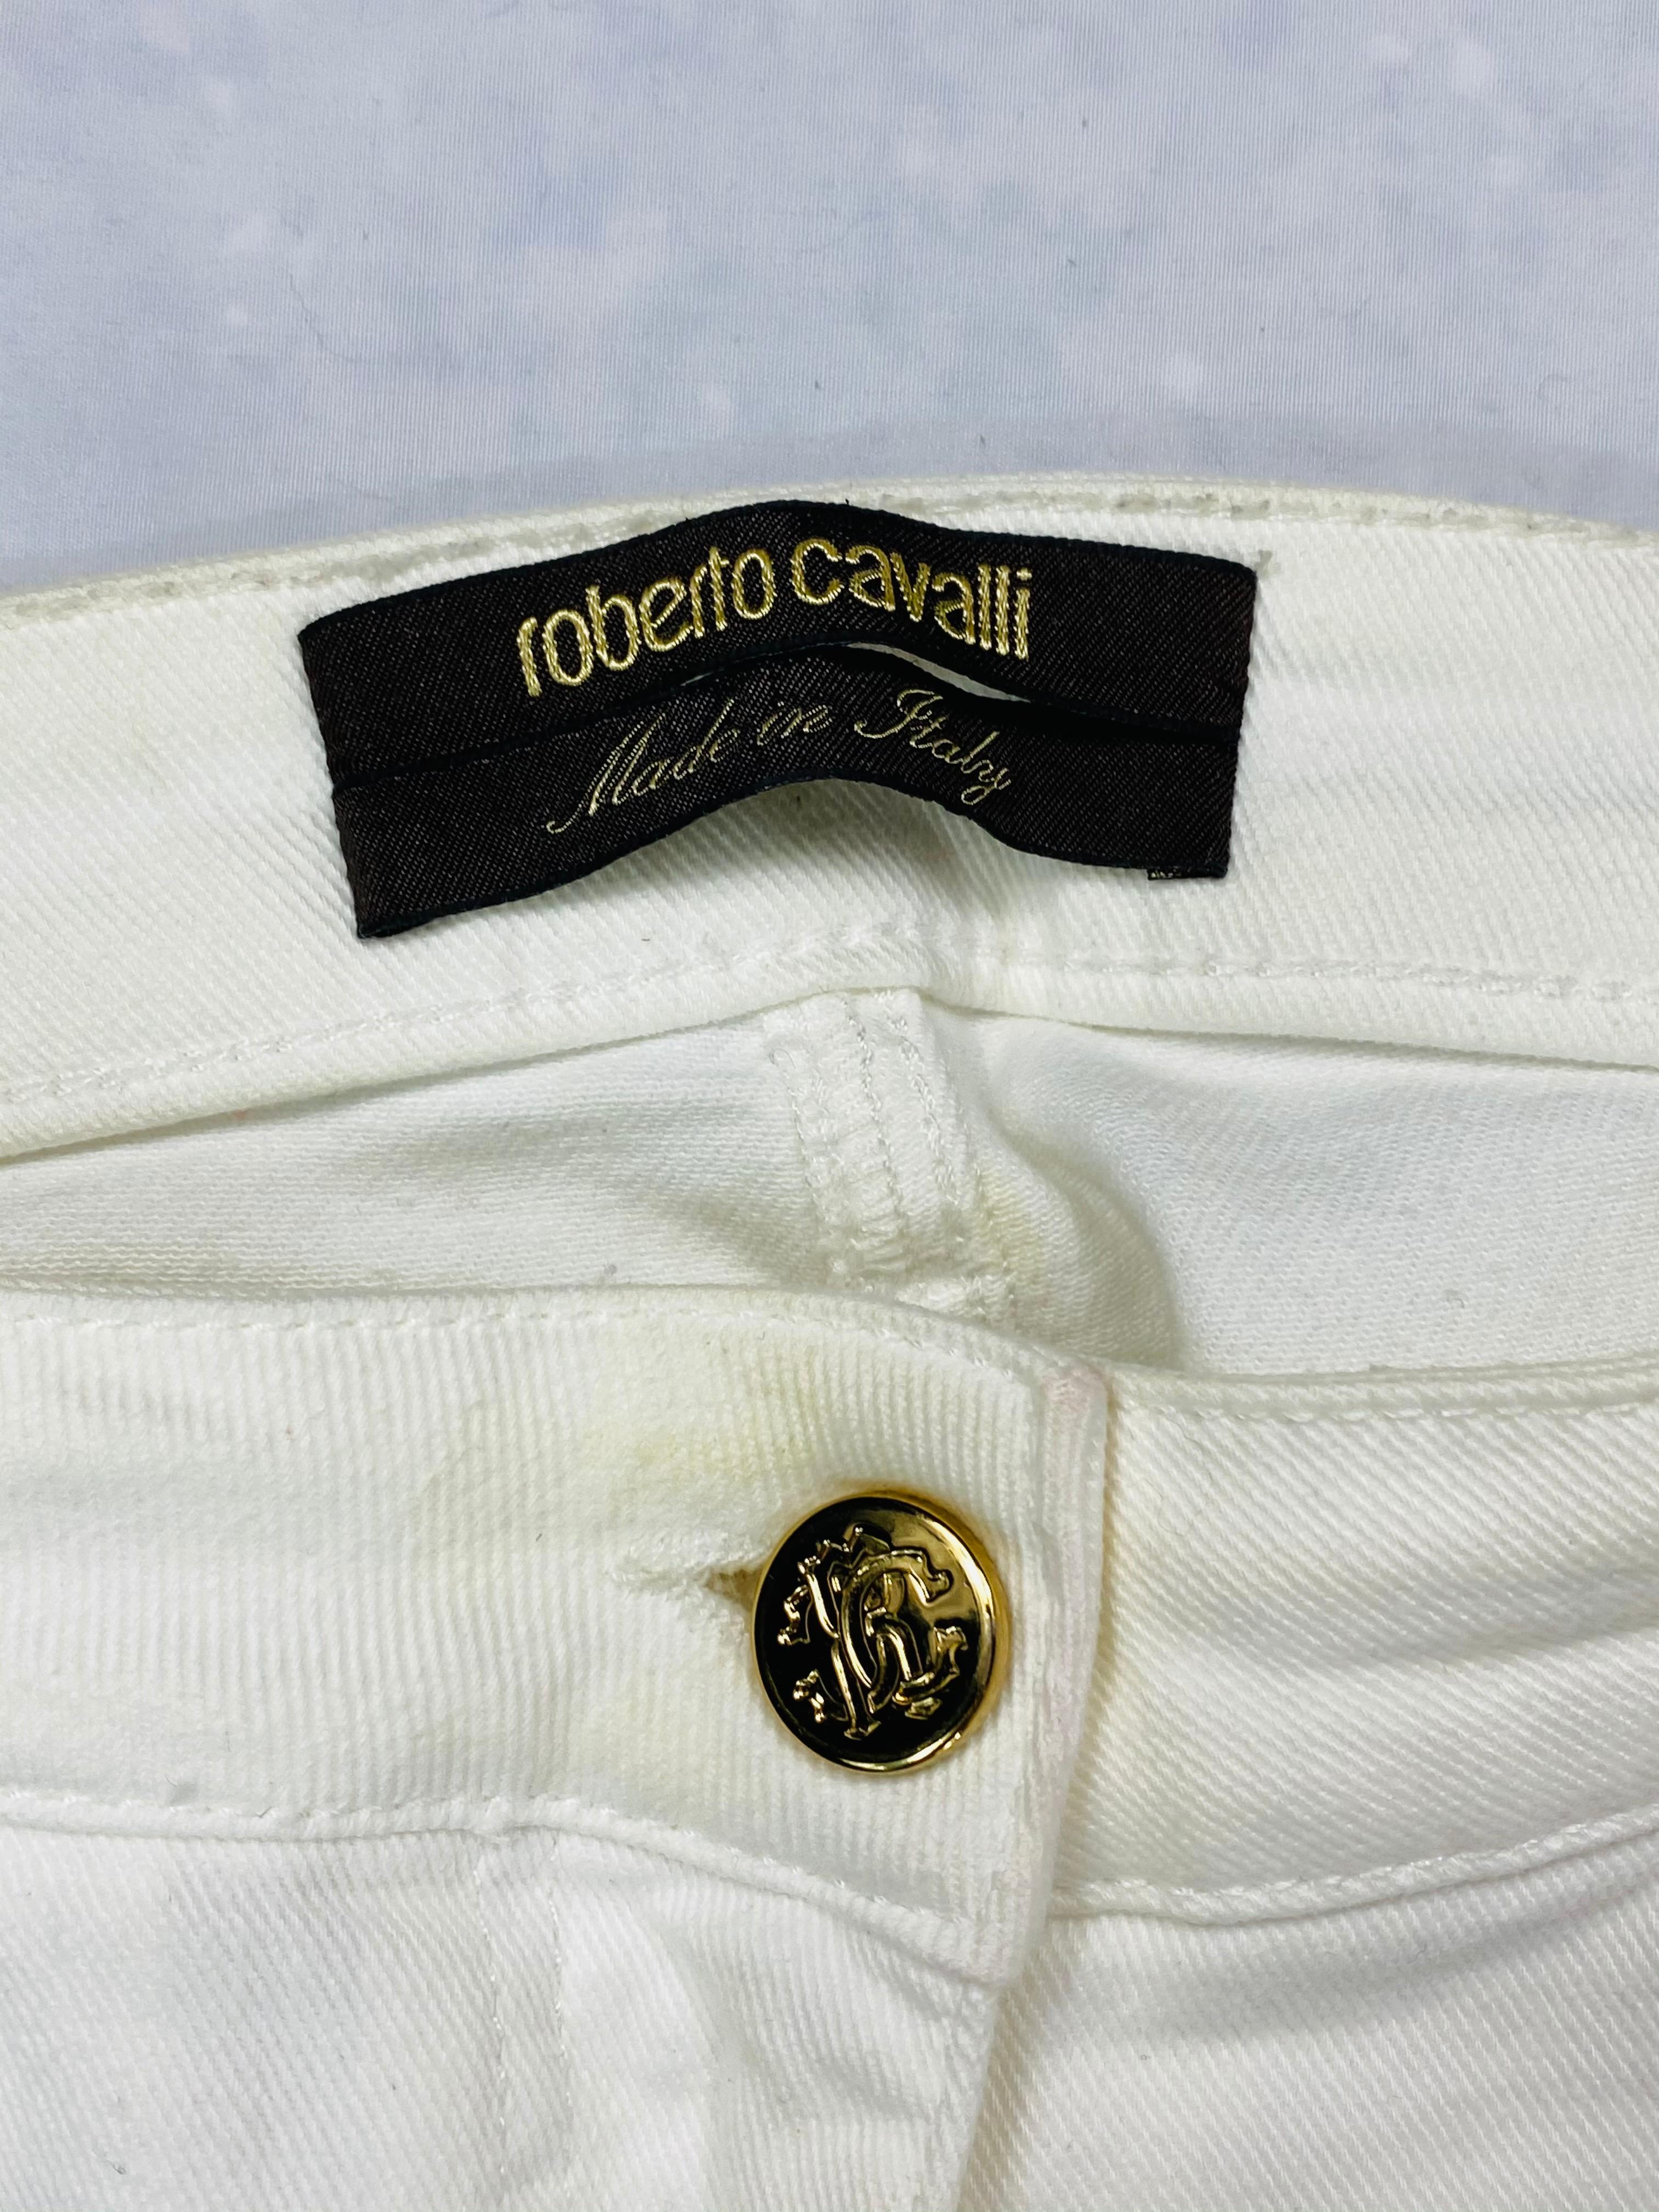 Einzelheiten zum Produkt:

Größe 42. 170/ 80 A.
Aus weißem Baumwoll-Denim mit vergoldeten Details und gerader Passform.
Hergestellt in Italien.